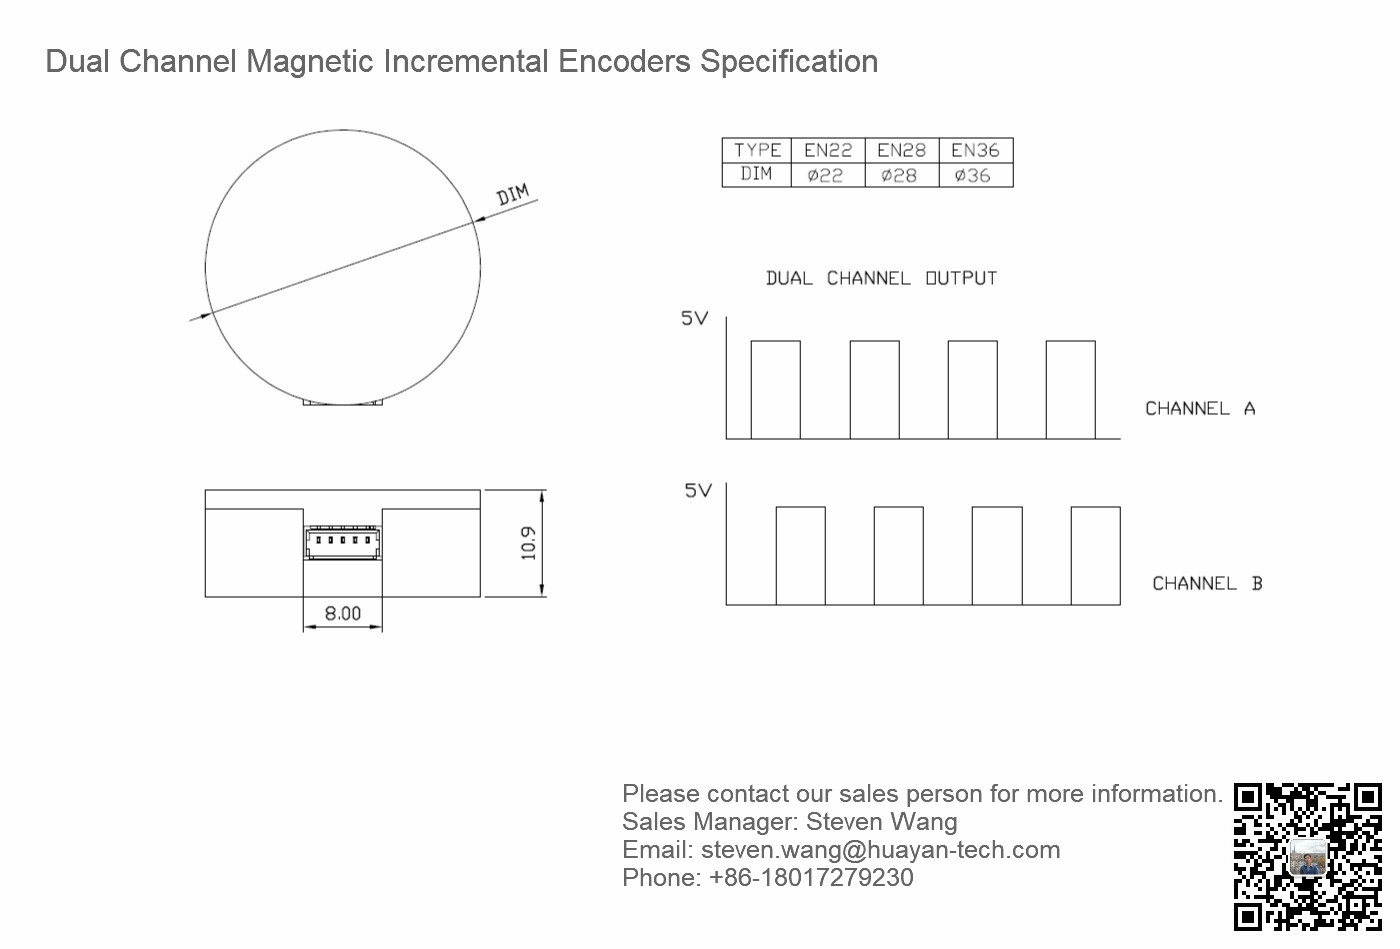 EN36 Magnetic Incremental Encoder